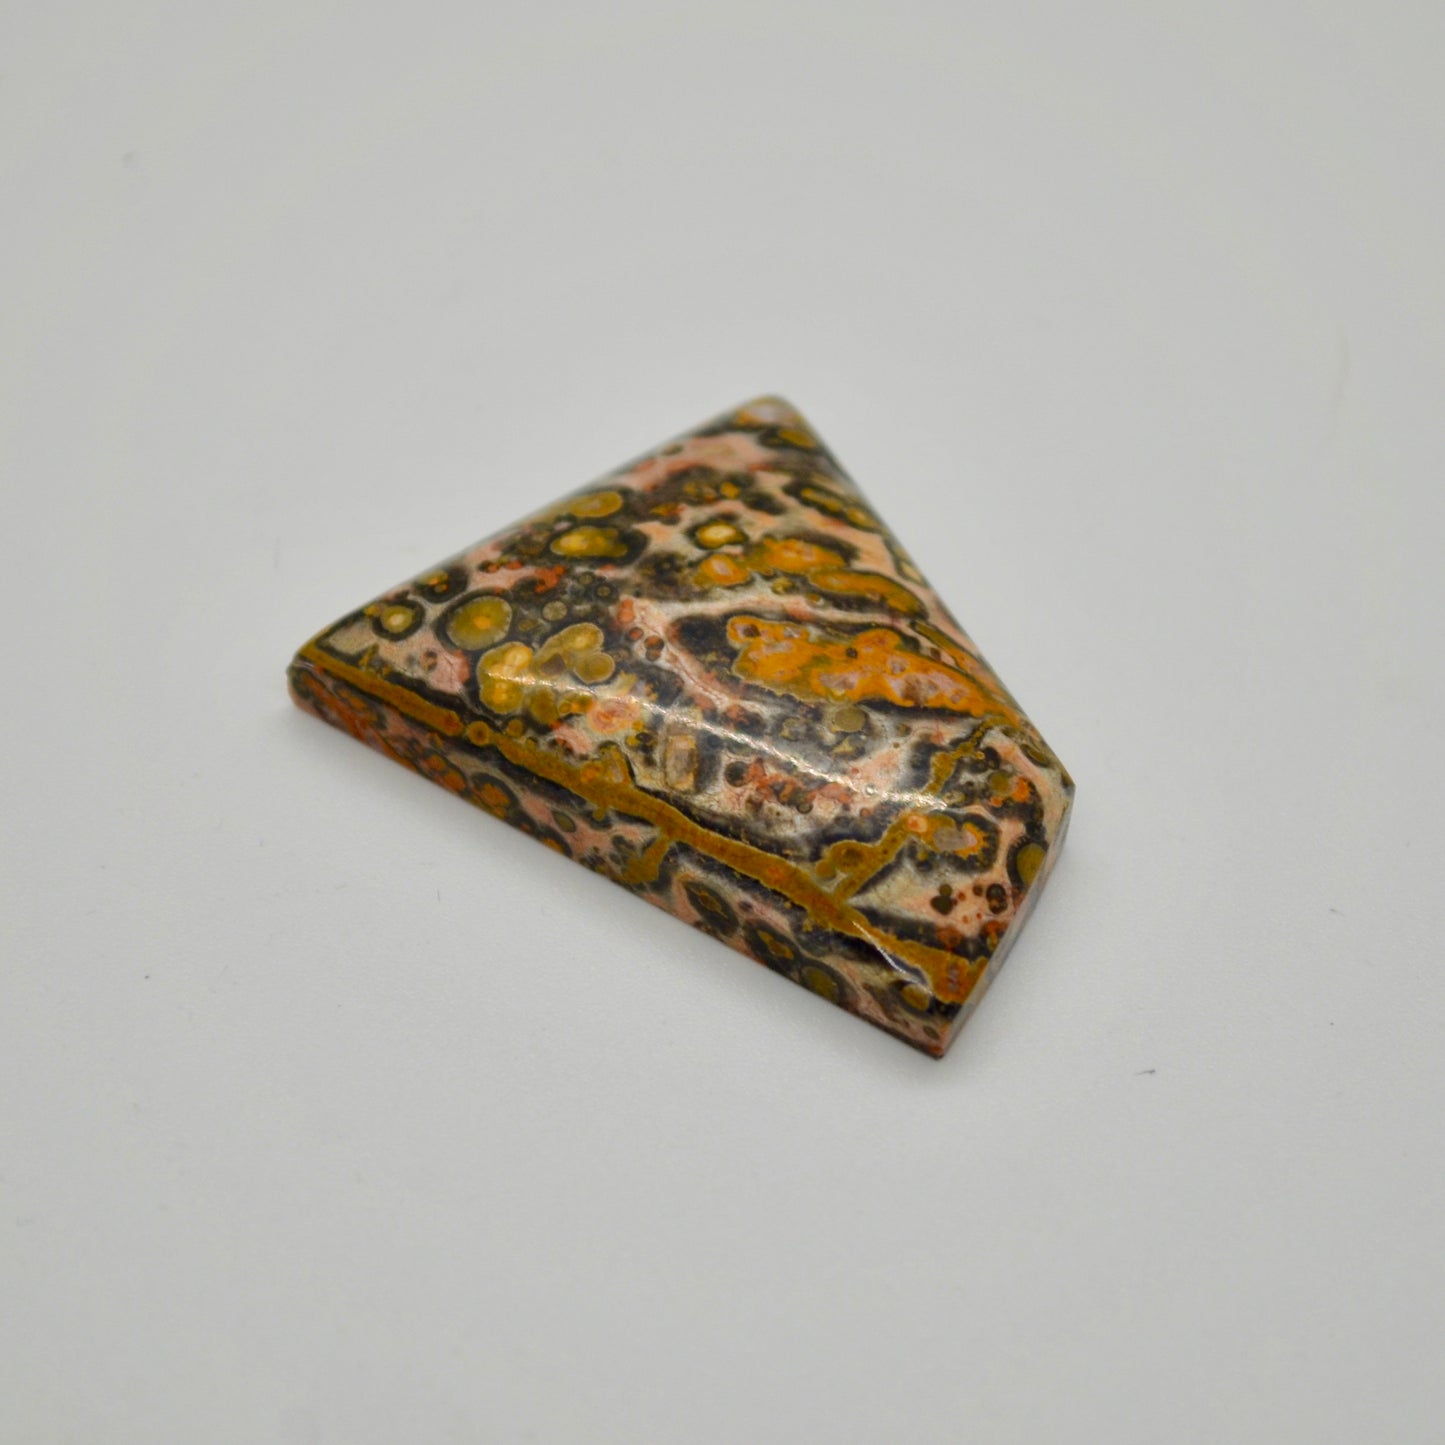 Leopard Skin Jasper Cabochon - 50 carats (37.0 mm x 28.0 mm)